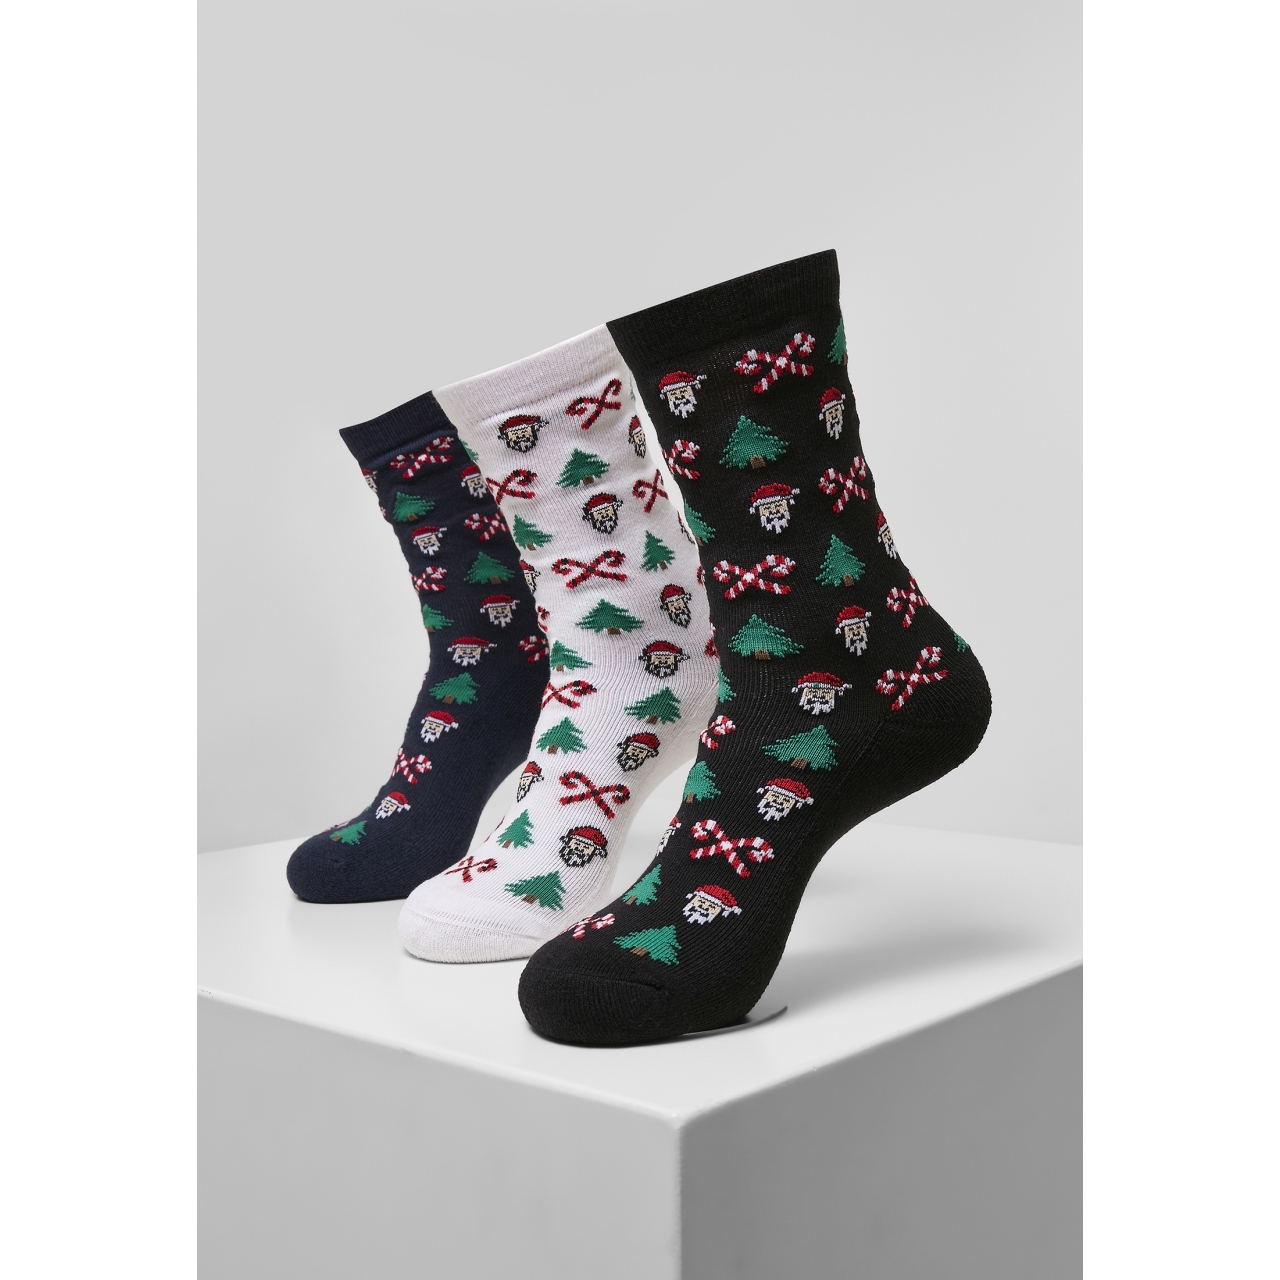 Ponožky Urban Classics Grumpy Santa Christmas 3 páry (navy, bílé, černéú, 47-50